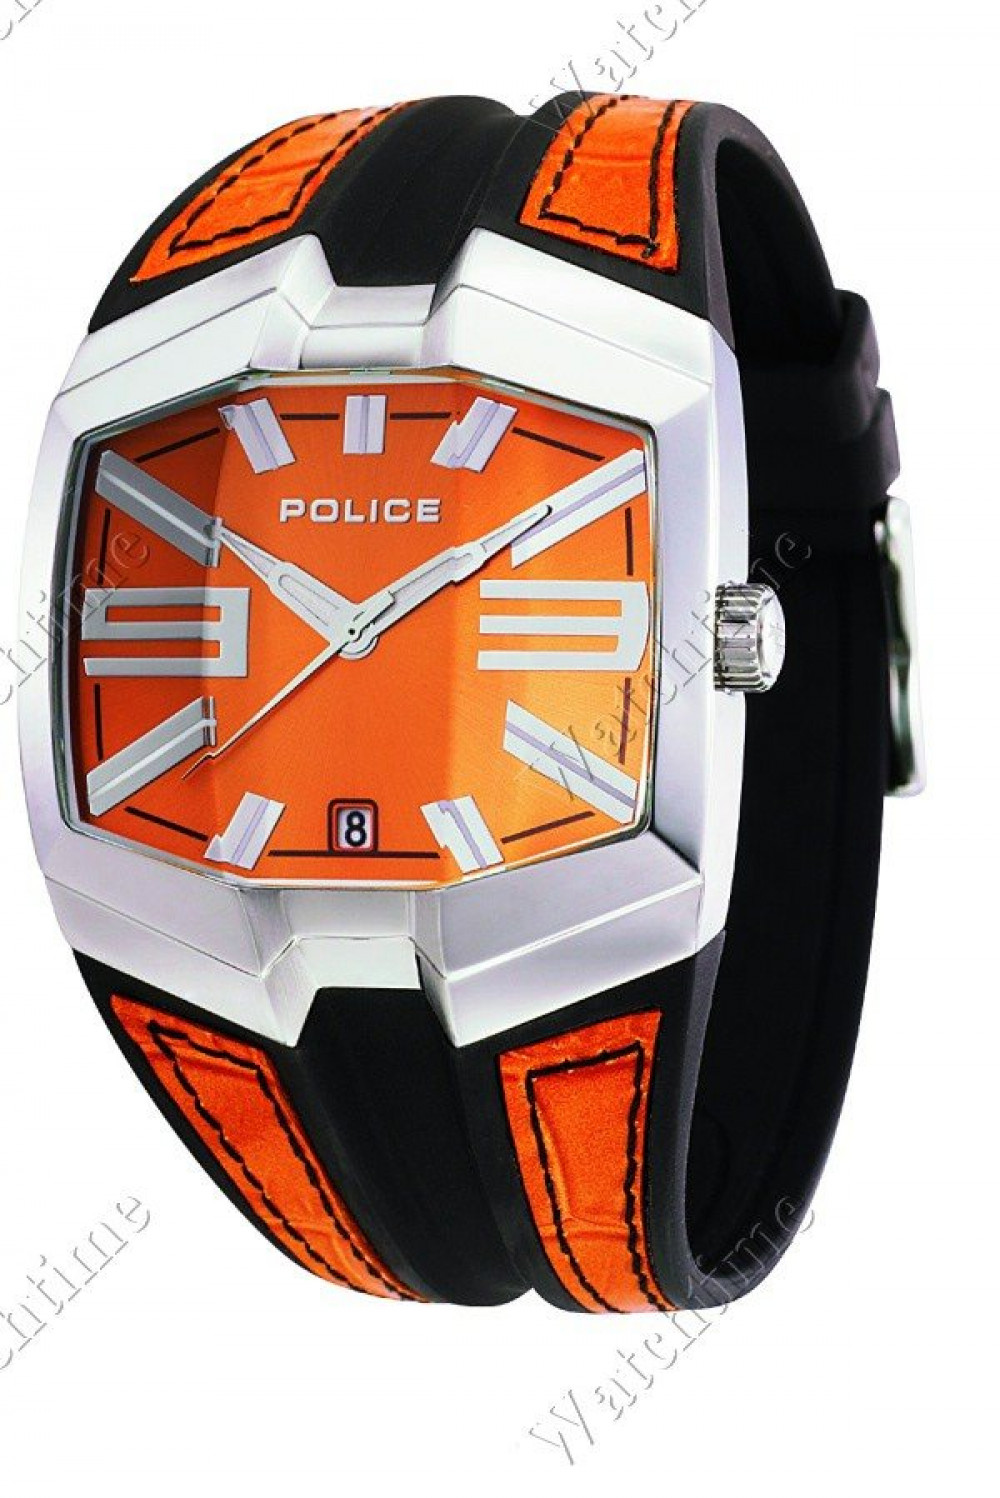 Zegarek firmy Police, model Axis